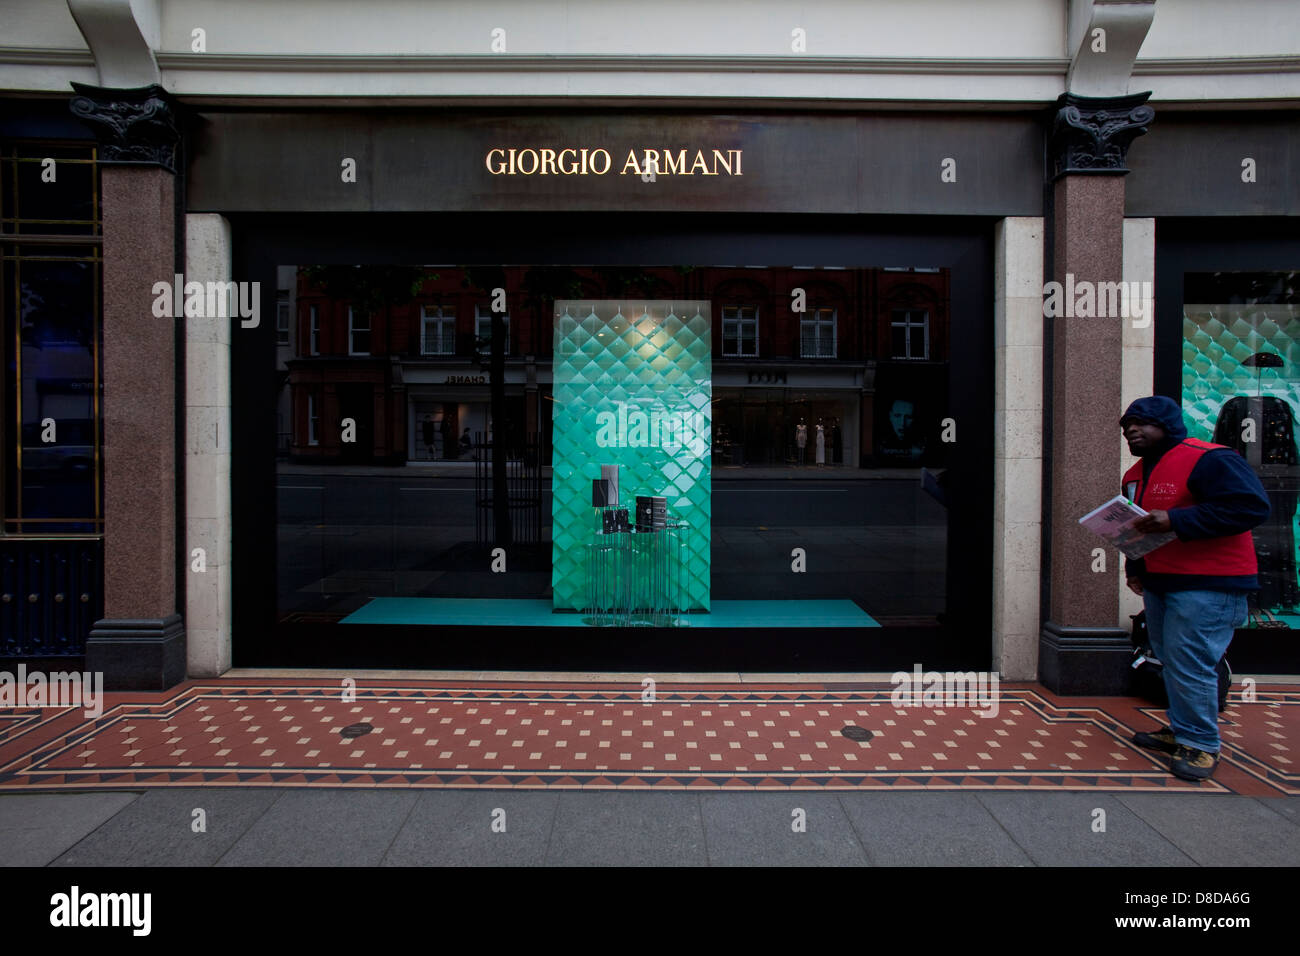 L'homme vend la grande question à l'extérieur de Giorgio Armani Shop, Knightsbridge, Londres, Angleterre Banque D'Images